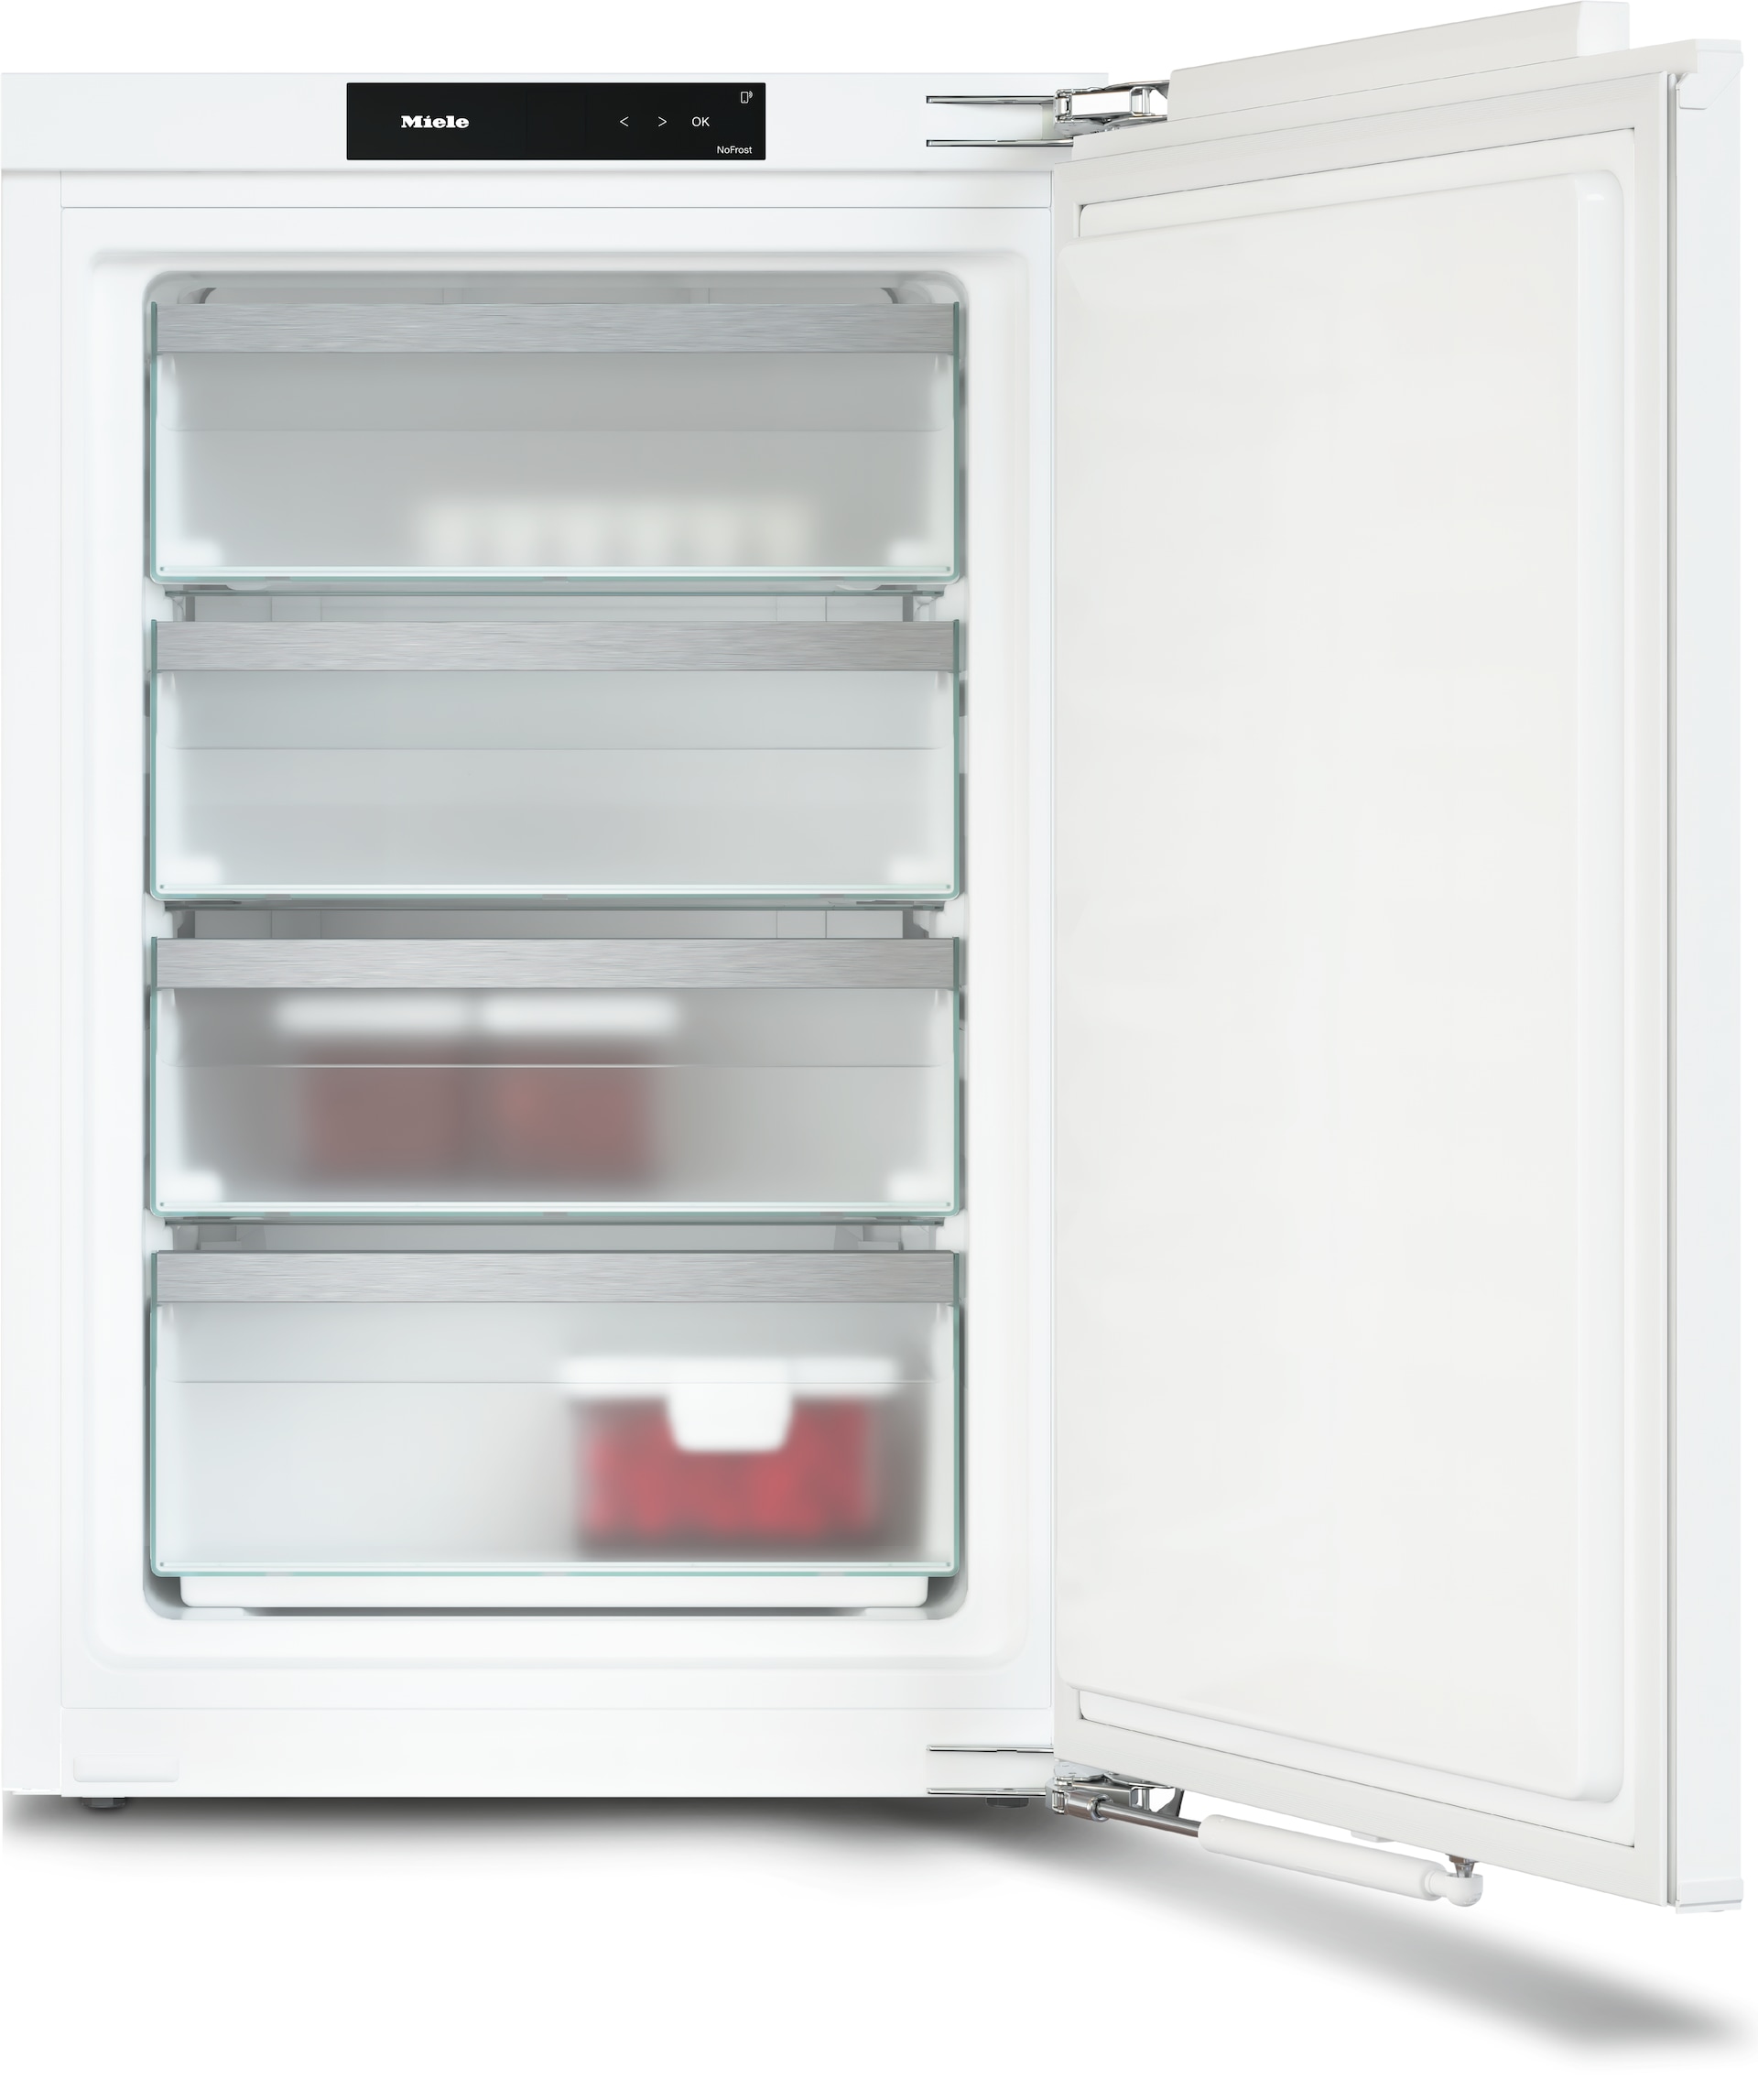 Refrigerare - FNS 7140 C - 1